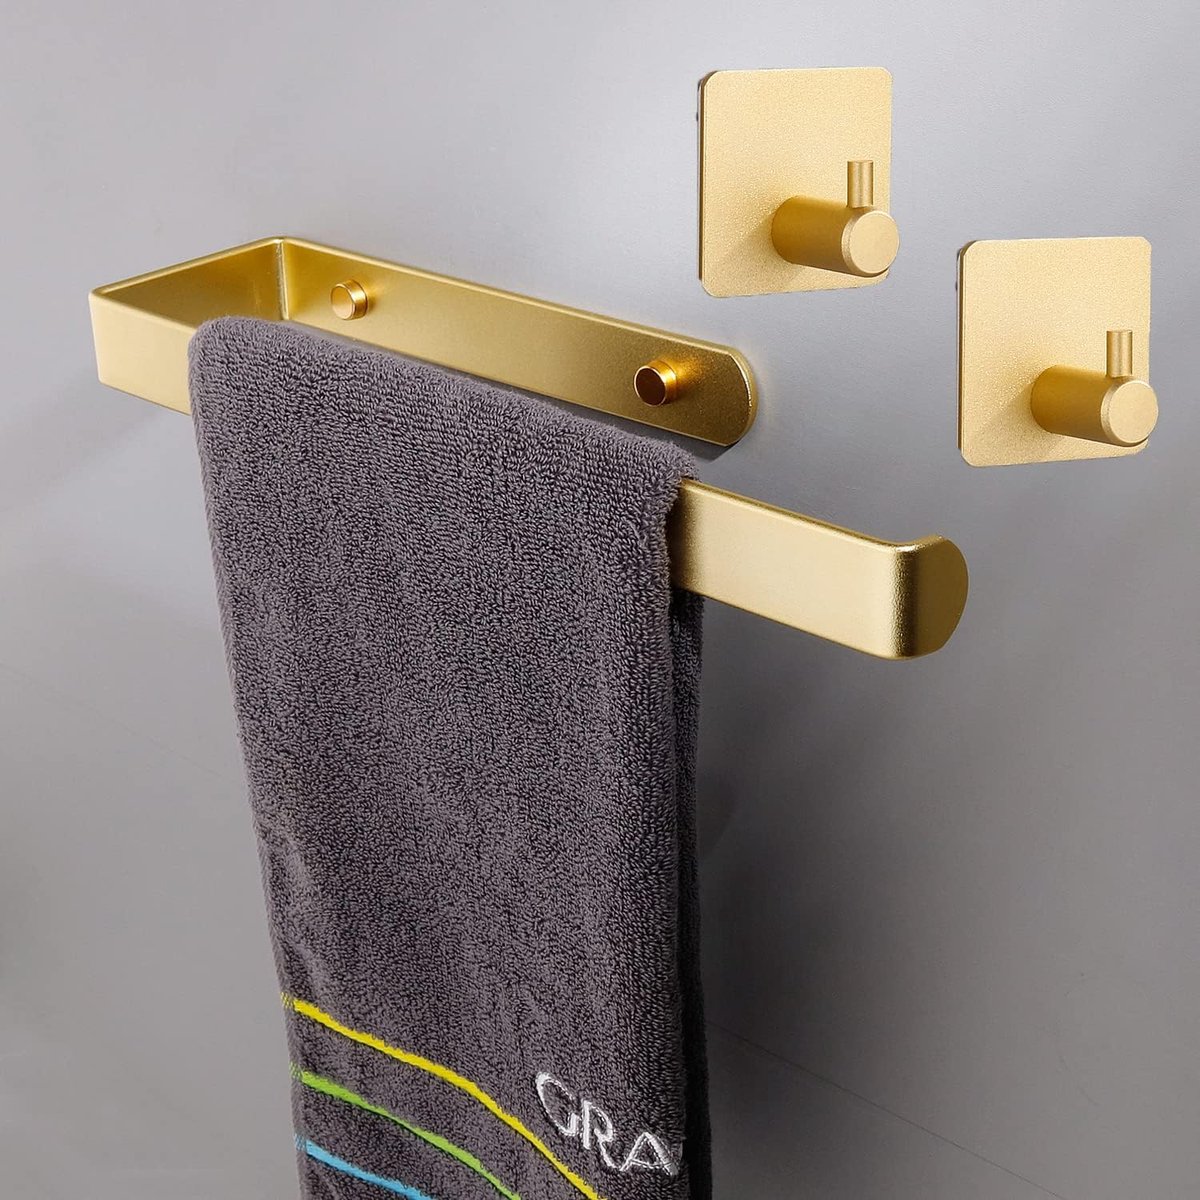 Handdoekenrek + handdoekhouders - Voor handdoeken of keukenrollen - Goudkleurig - Badkameraccessoire - Zelfklevende wandhouder set - Roestvrij